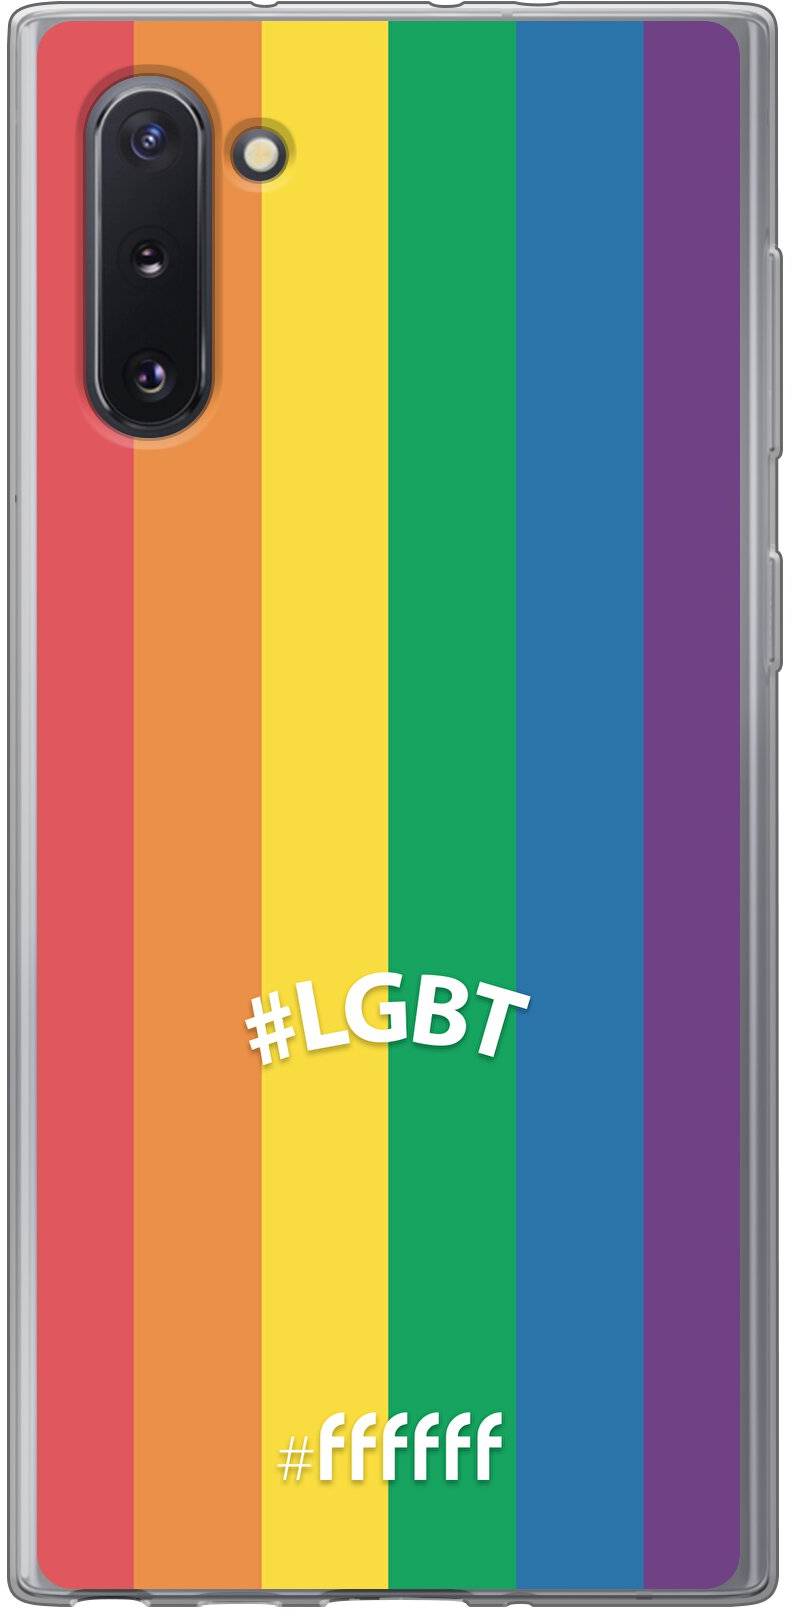 #LGBT - #LGBT Galaxy Note 10